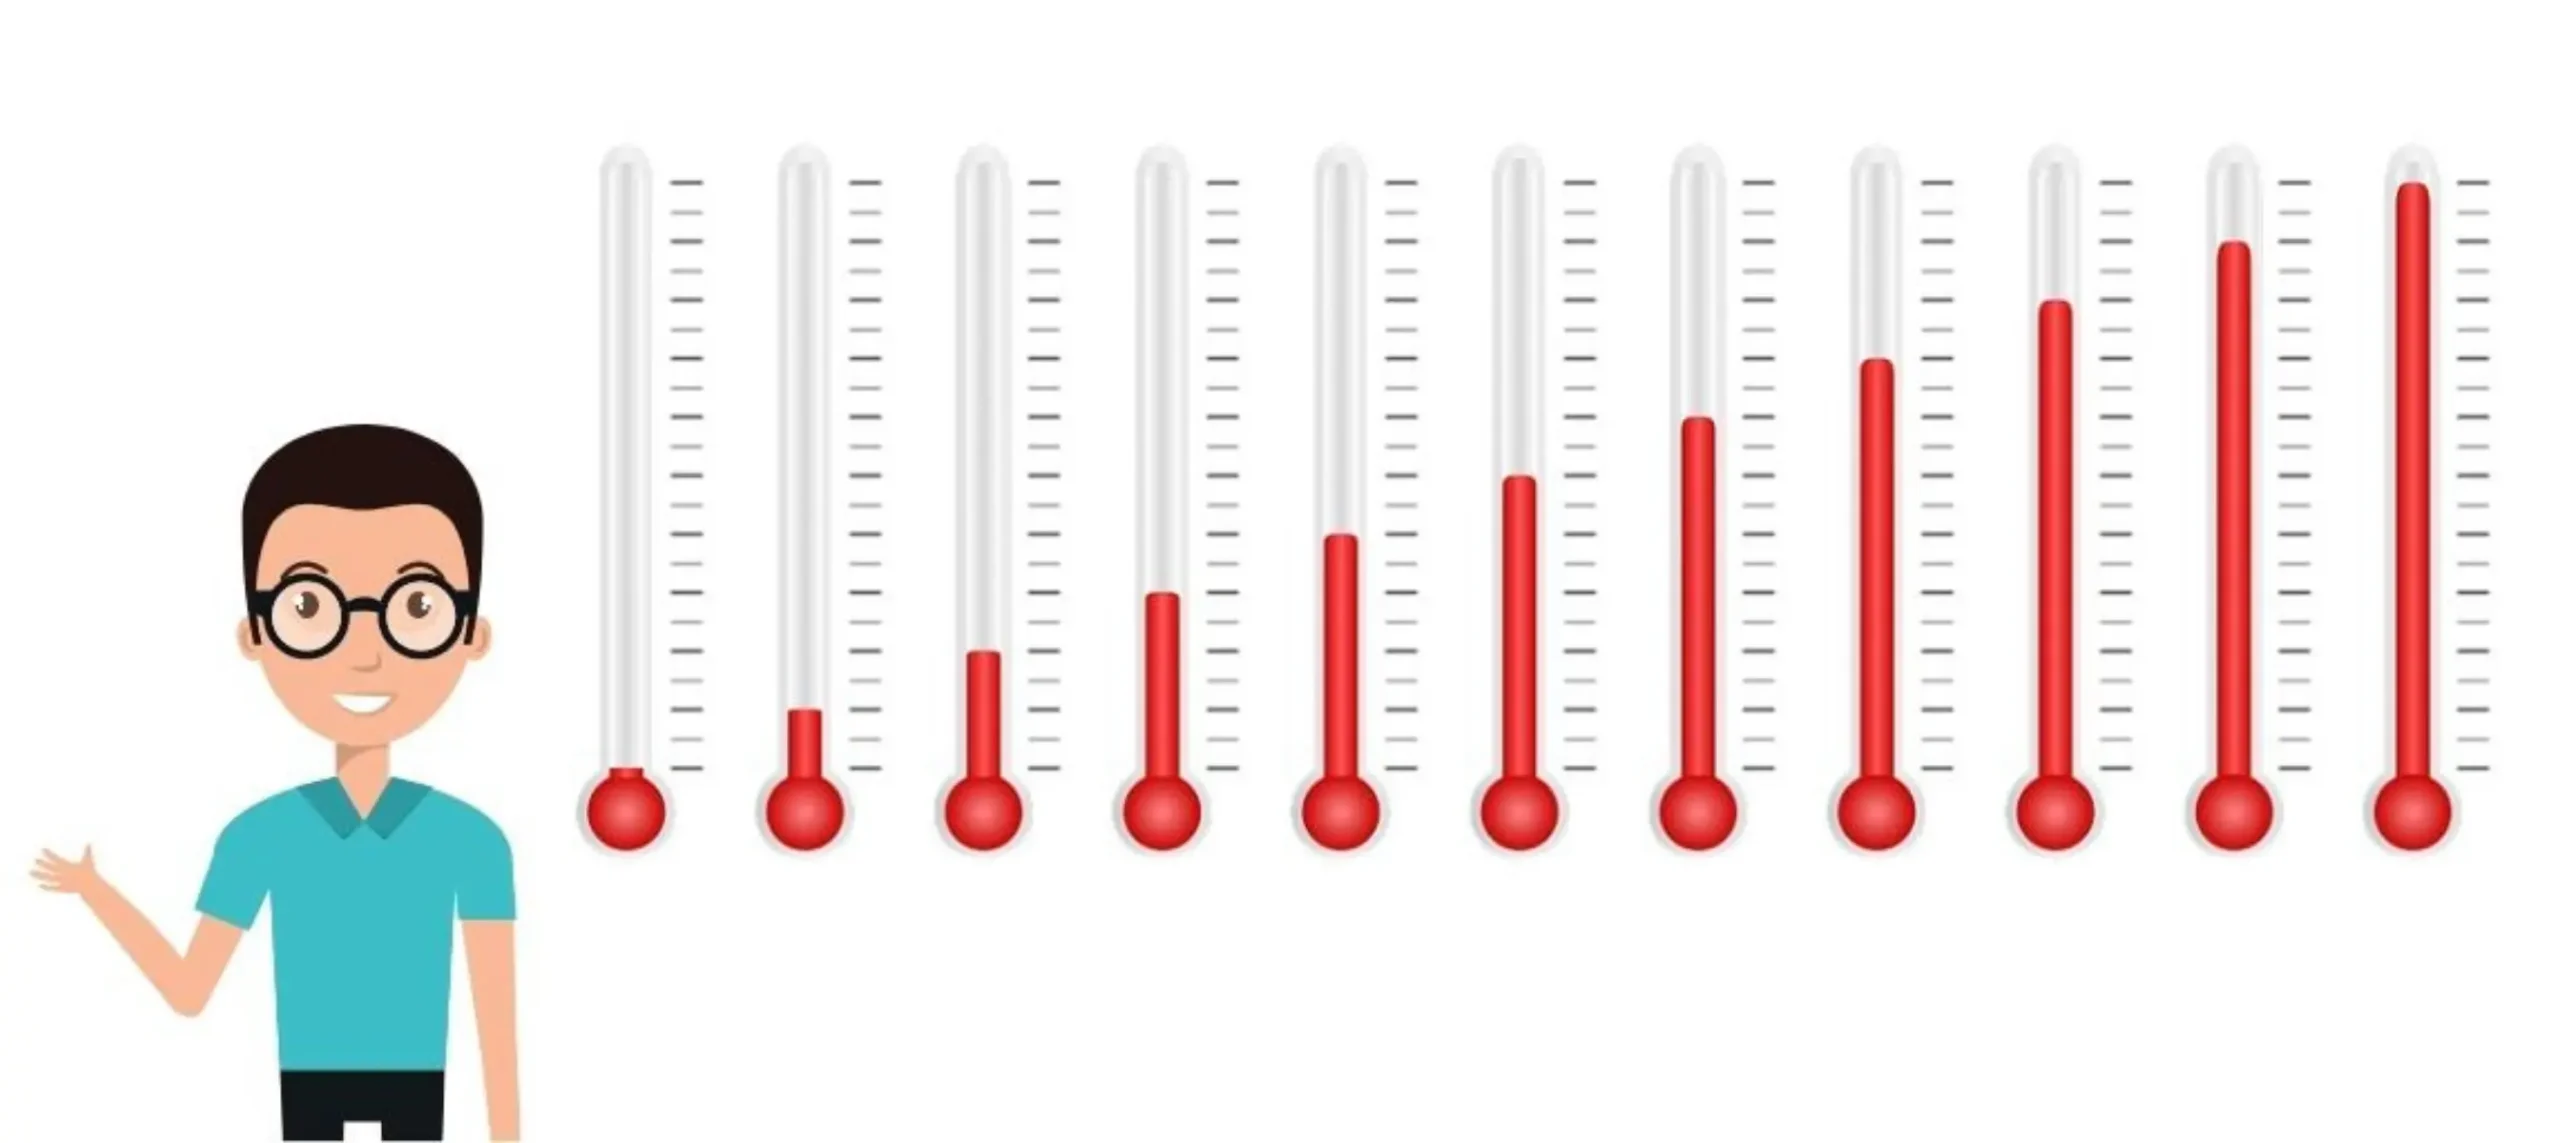 Thermometer Temperatur Abbildung